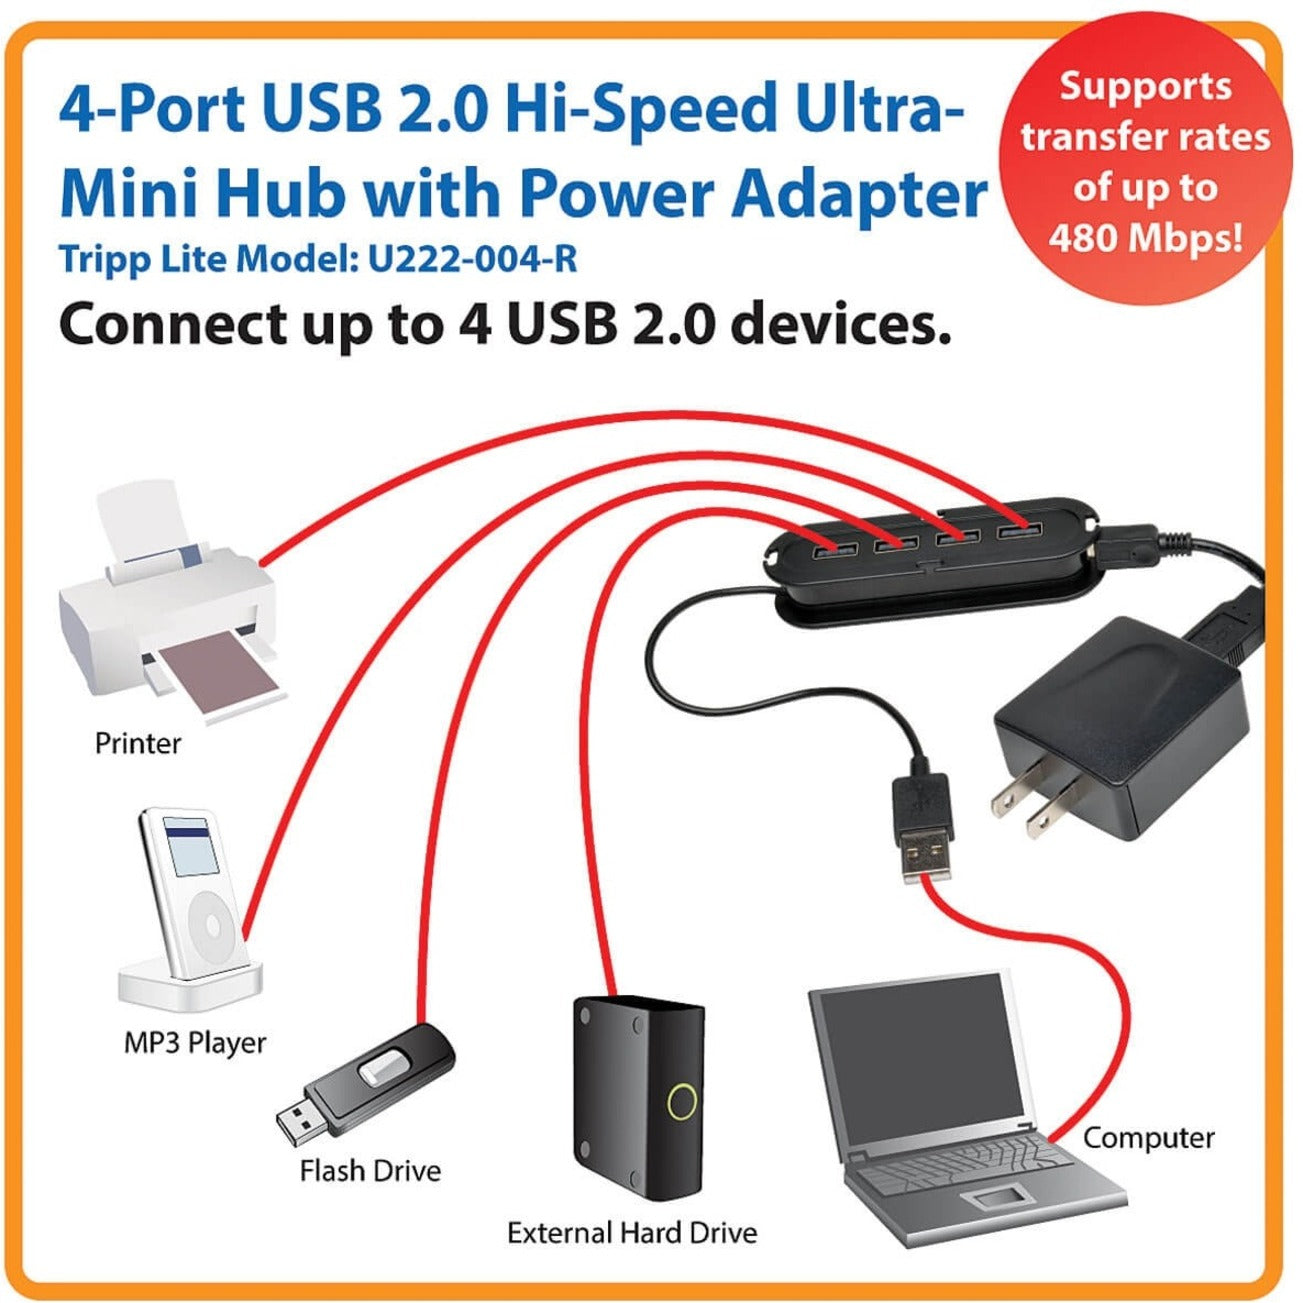 Tripp Lite U222-004-R 4-Port USB 2.0 Hi-Speed Ultra-Mini Hub Compact Design Black  Tripp Lite U222-004-R 4-Port USB 2.0 Hi-Speed Ultra-Mini Hub Design Compatto Nero